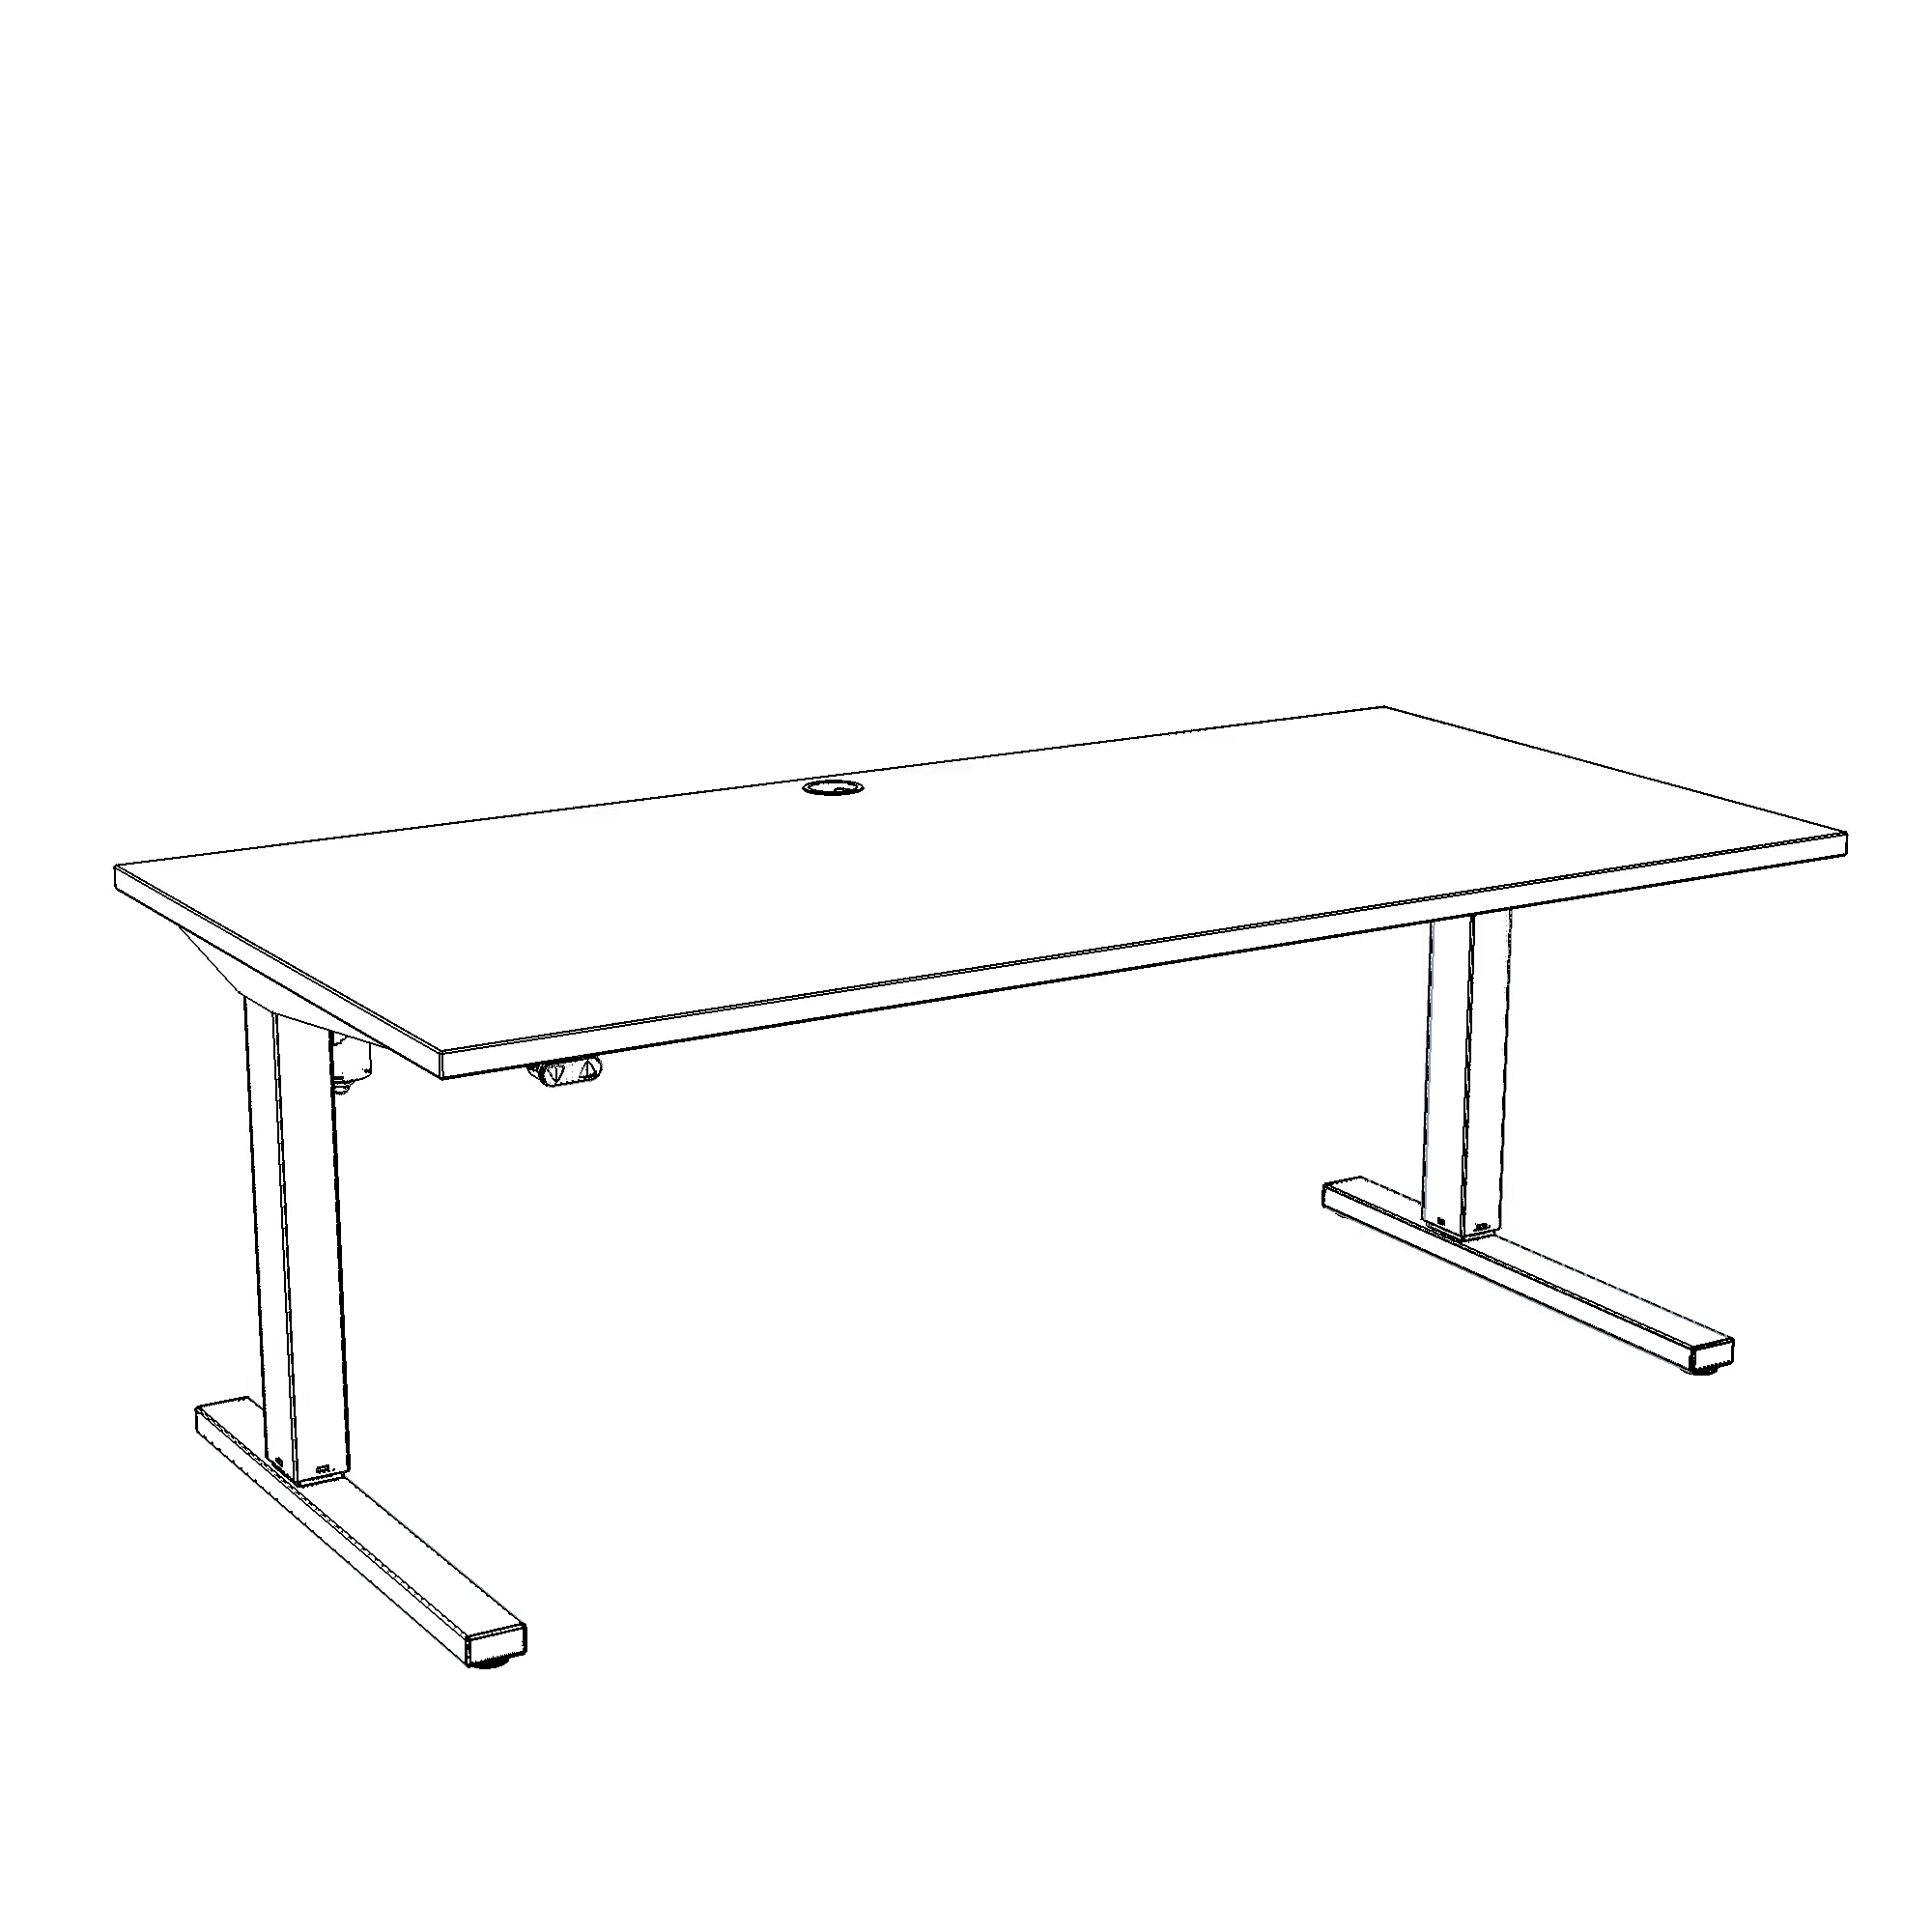 Schreibtisch steh/sitz | 160x80 cm | Schwarz mit grauem Gestell